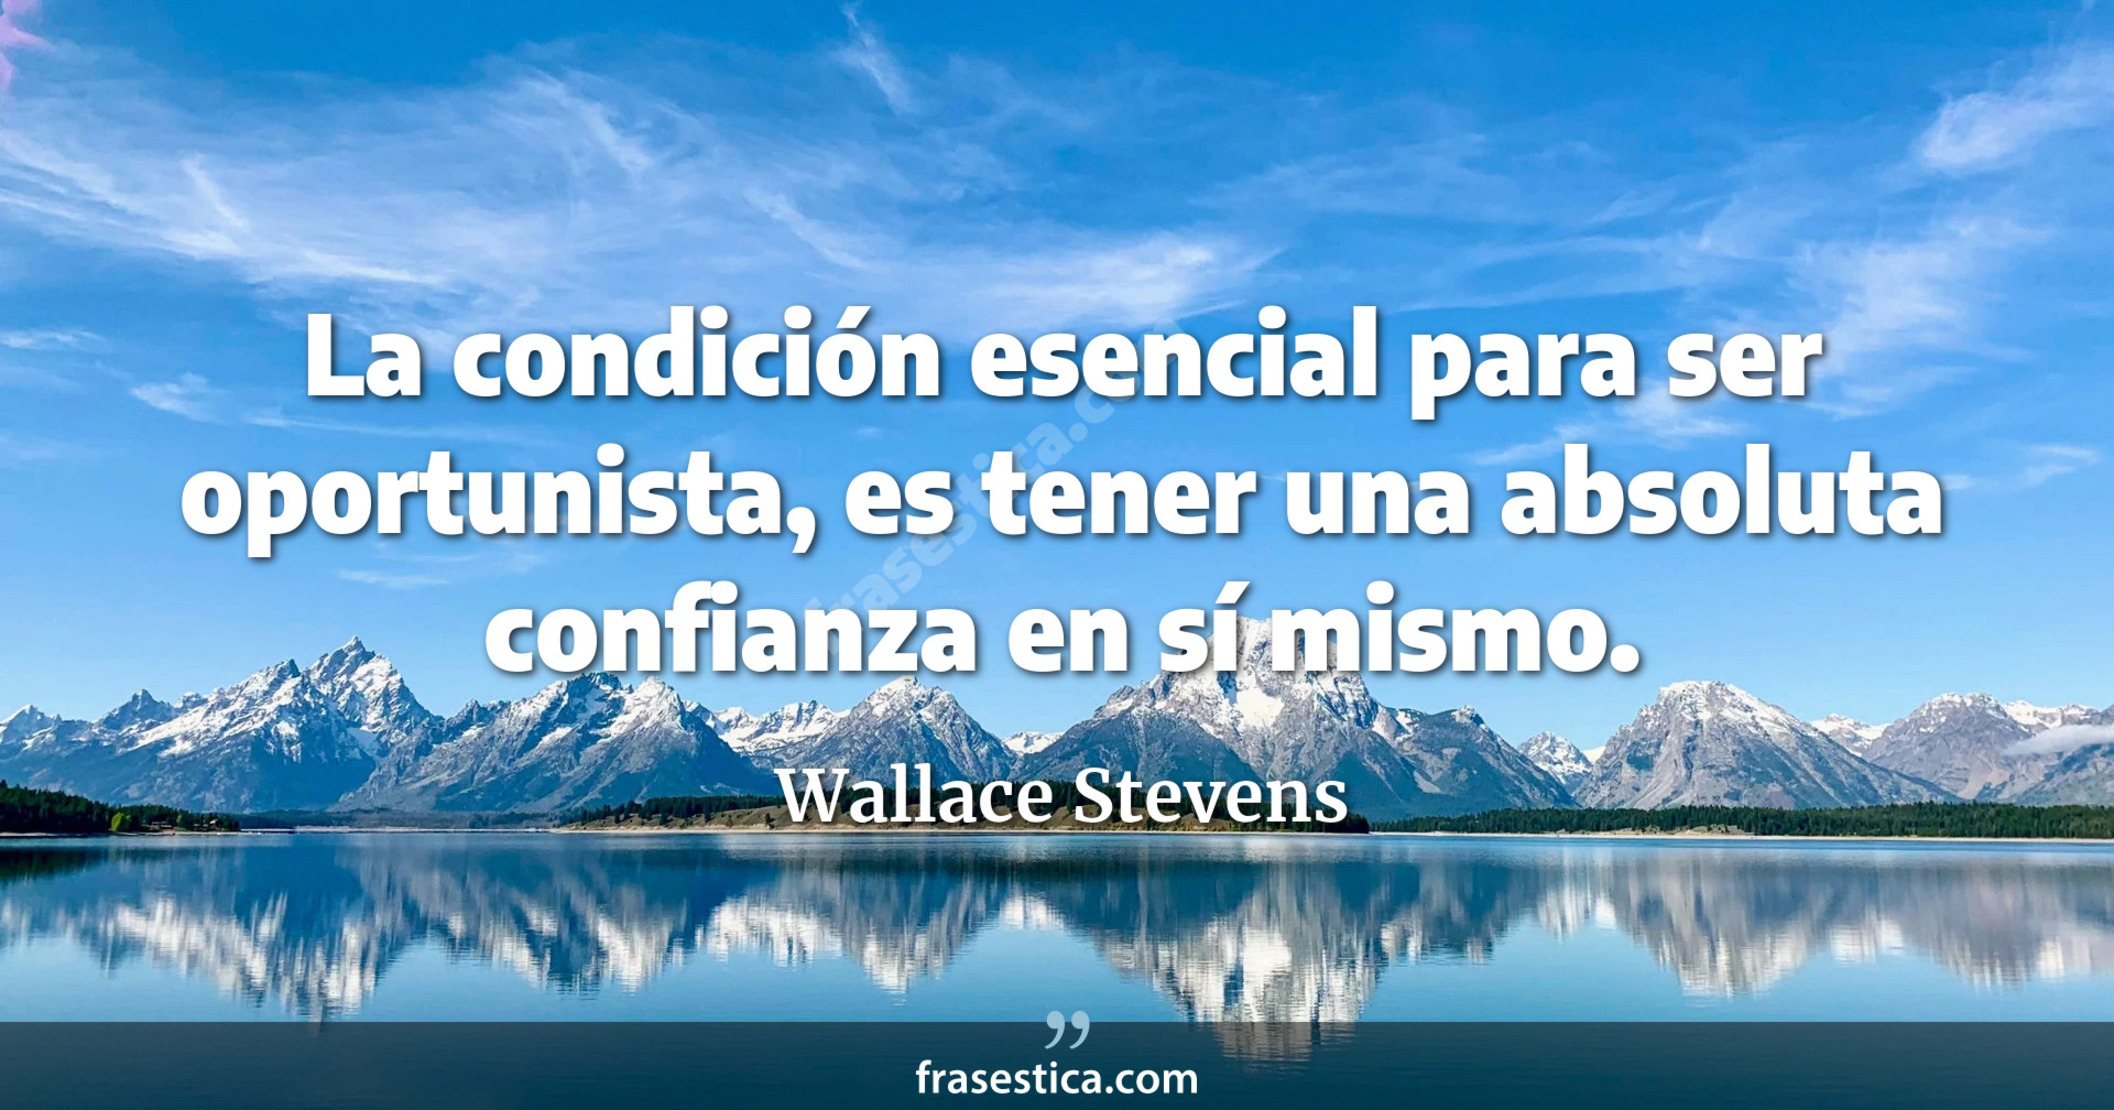 La condición esencial para ser oportunista, es tener una absoluta confianza en sí mismo. - Wallace Stevens